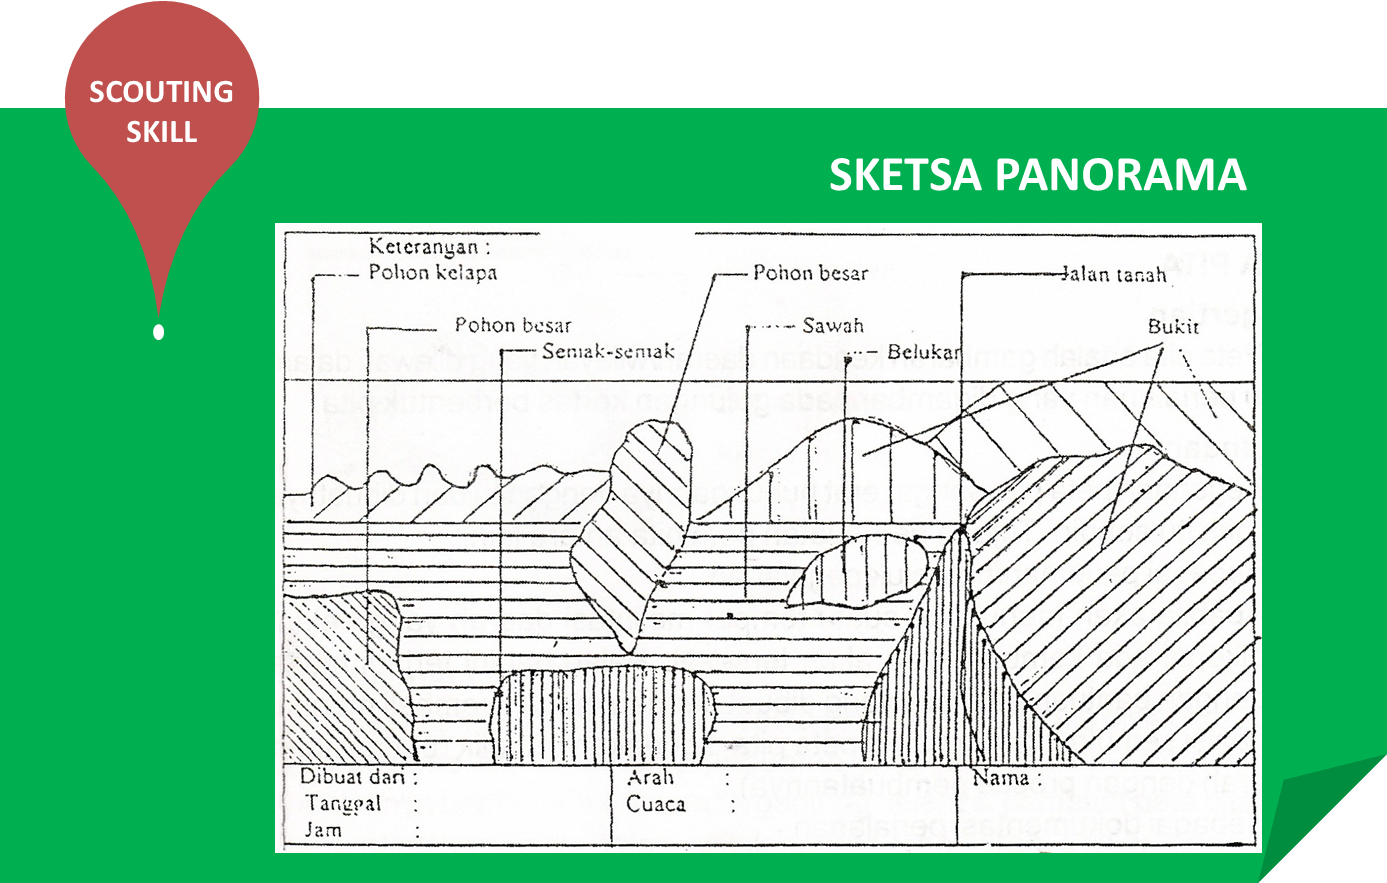 Sejarah Pramuka: Sketsa Panorama (Scouting Skill)